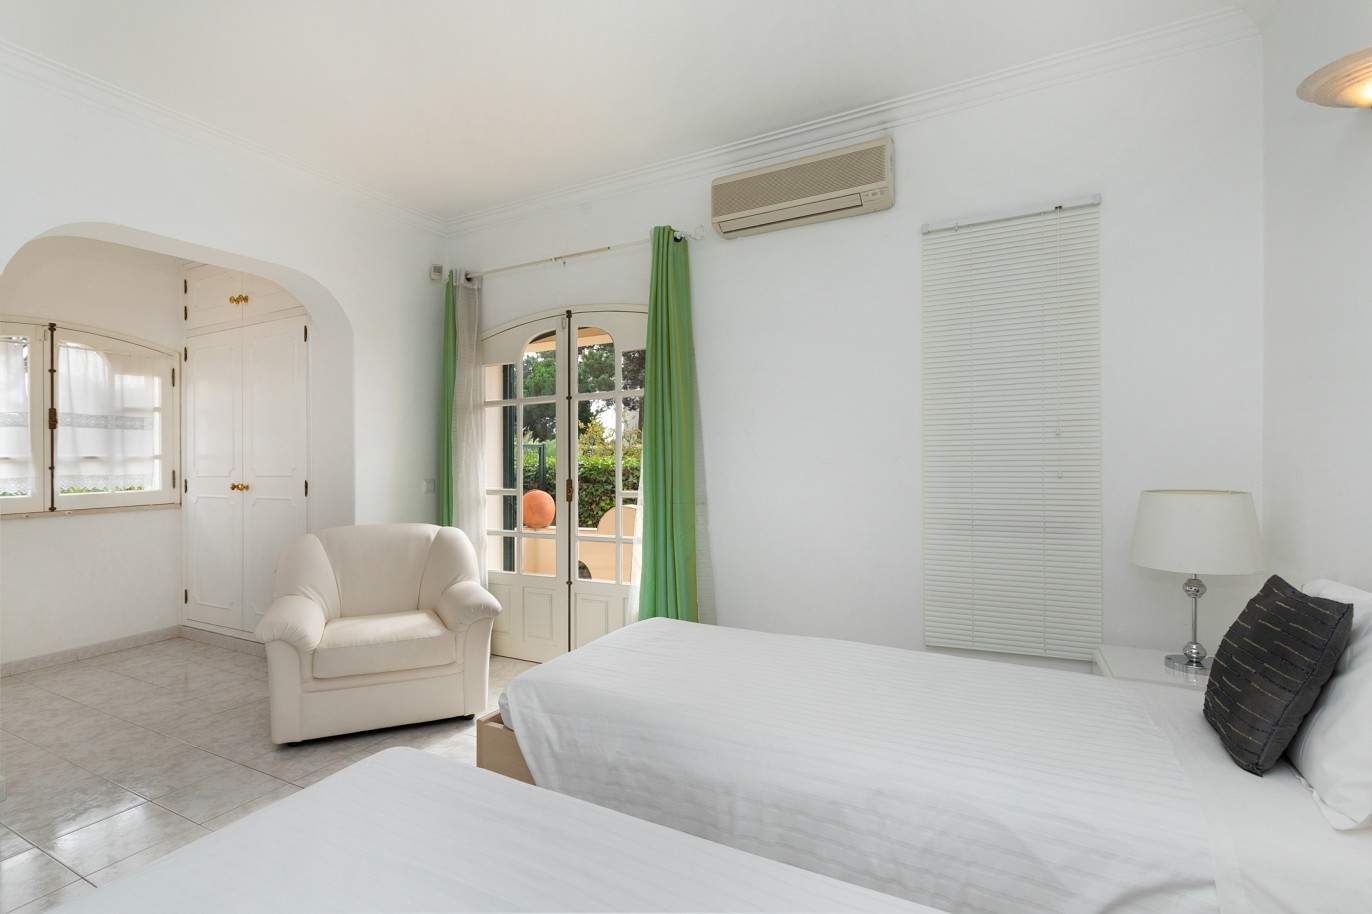 5 Bedroom Villa with swimming pool, for sale in Vilamoura, Algarve_212554